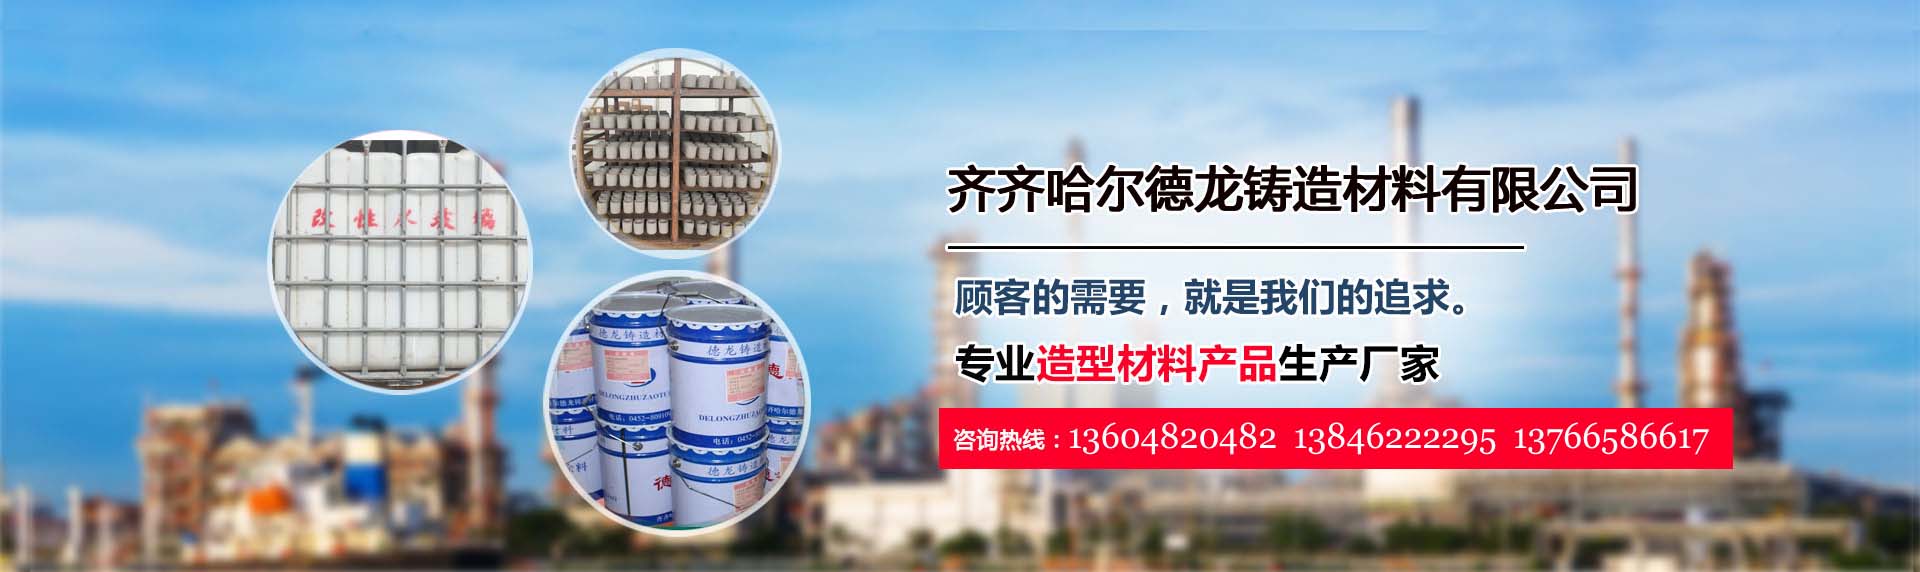 关于当前产品12bet平台·(中国)官方网站的成功案例等相关图片